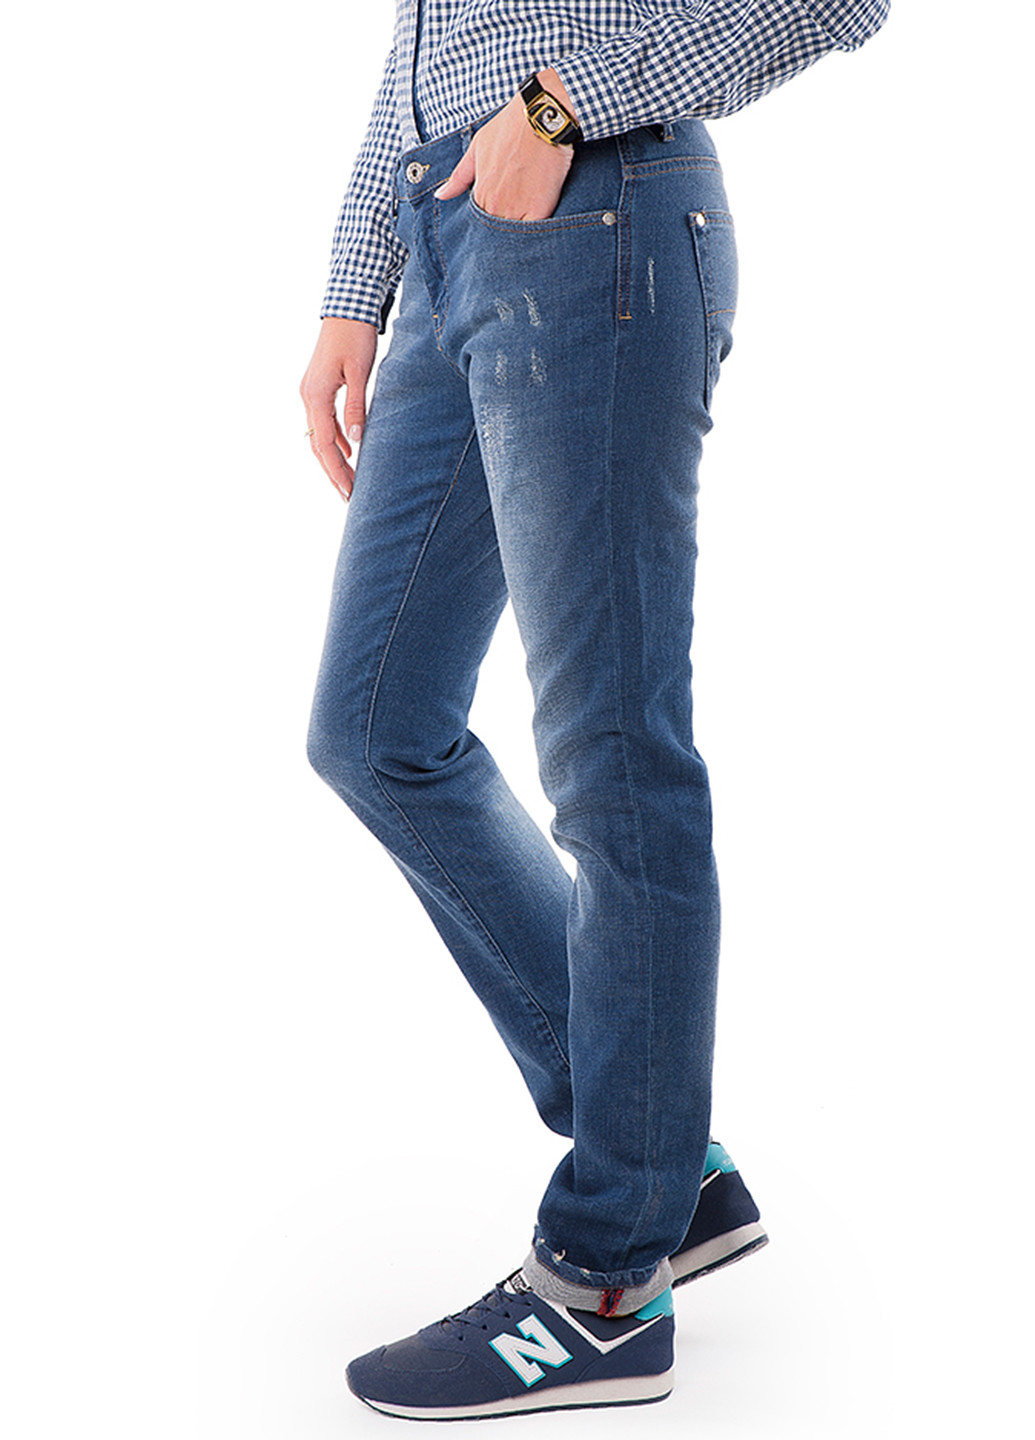 Синие демисезонные джинсы MR 520